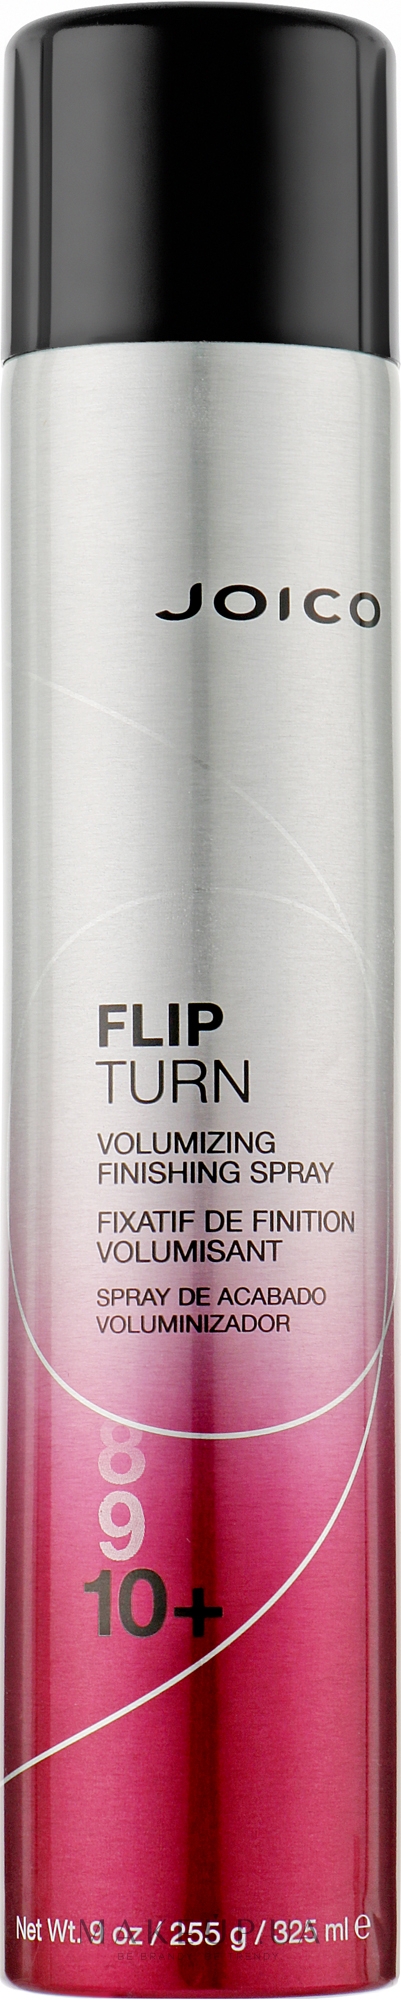 Фінішний спрей для збільшення об'єму (фіксація 10 + ) - Joico Flip Turn Volumizing Finishing Spray — фото 325ml